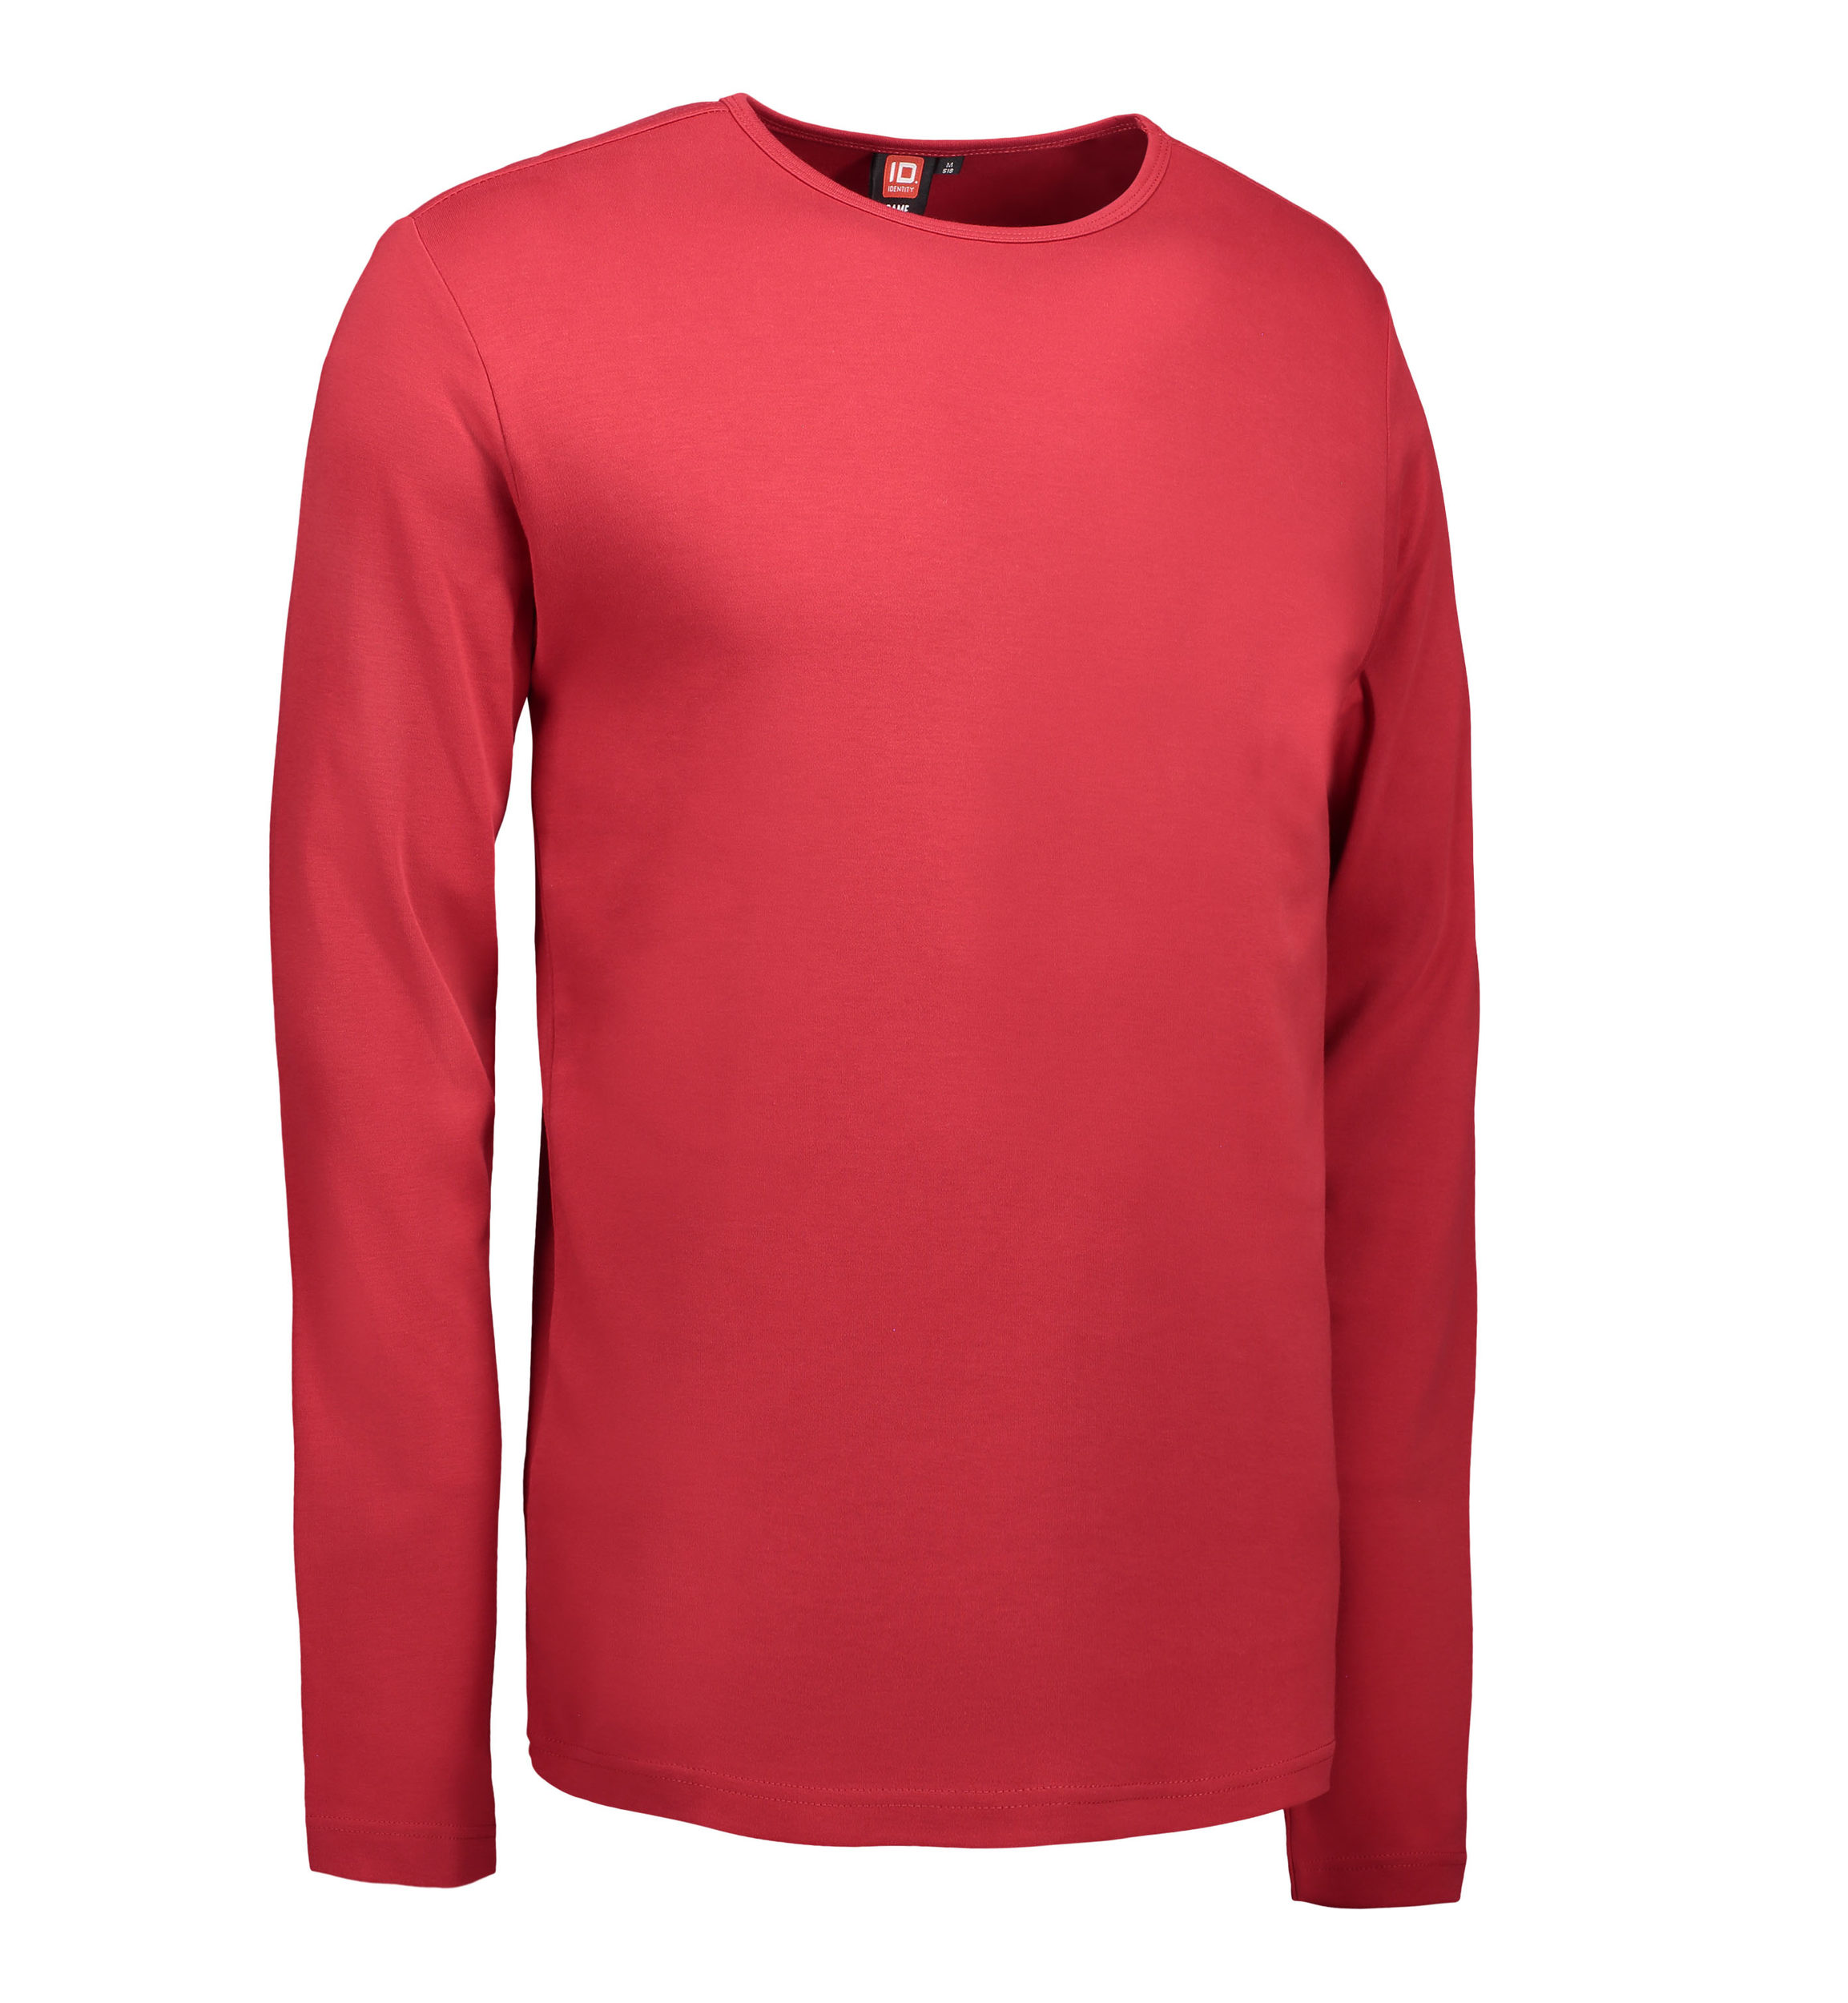 Billede af Rød langærmet t-shirt til mænd - XL hos Sygeplejebutikken.dk